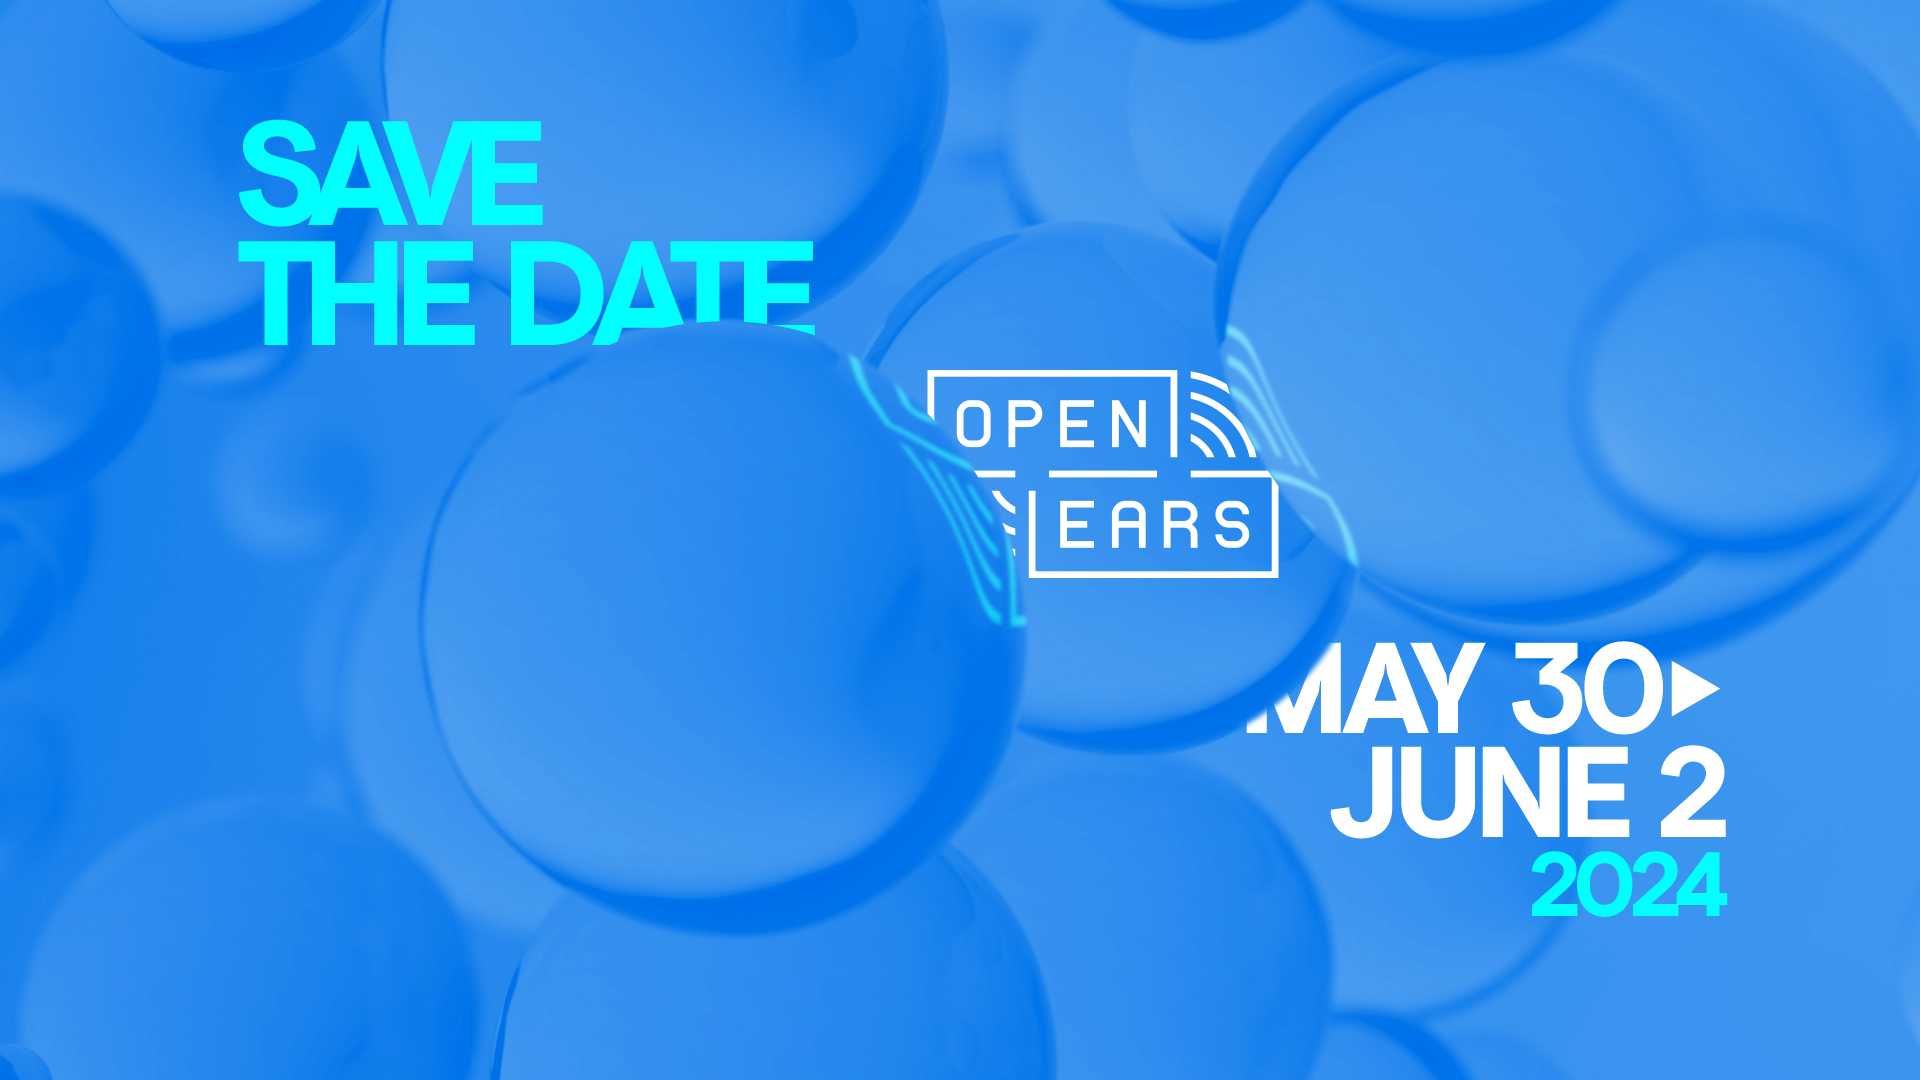 OpenEars June 2-5, 2022